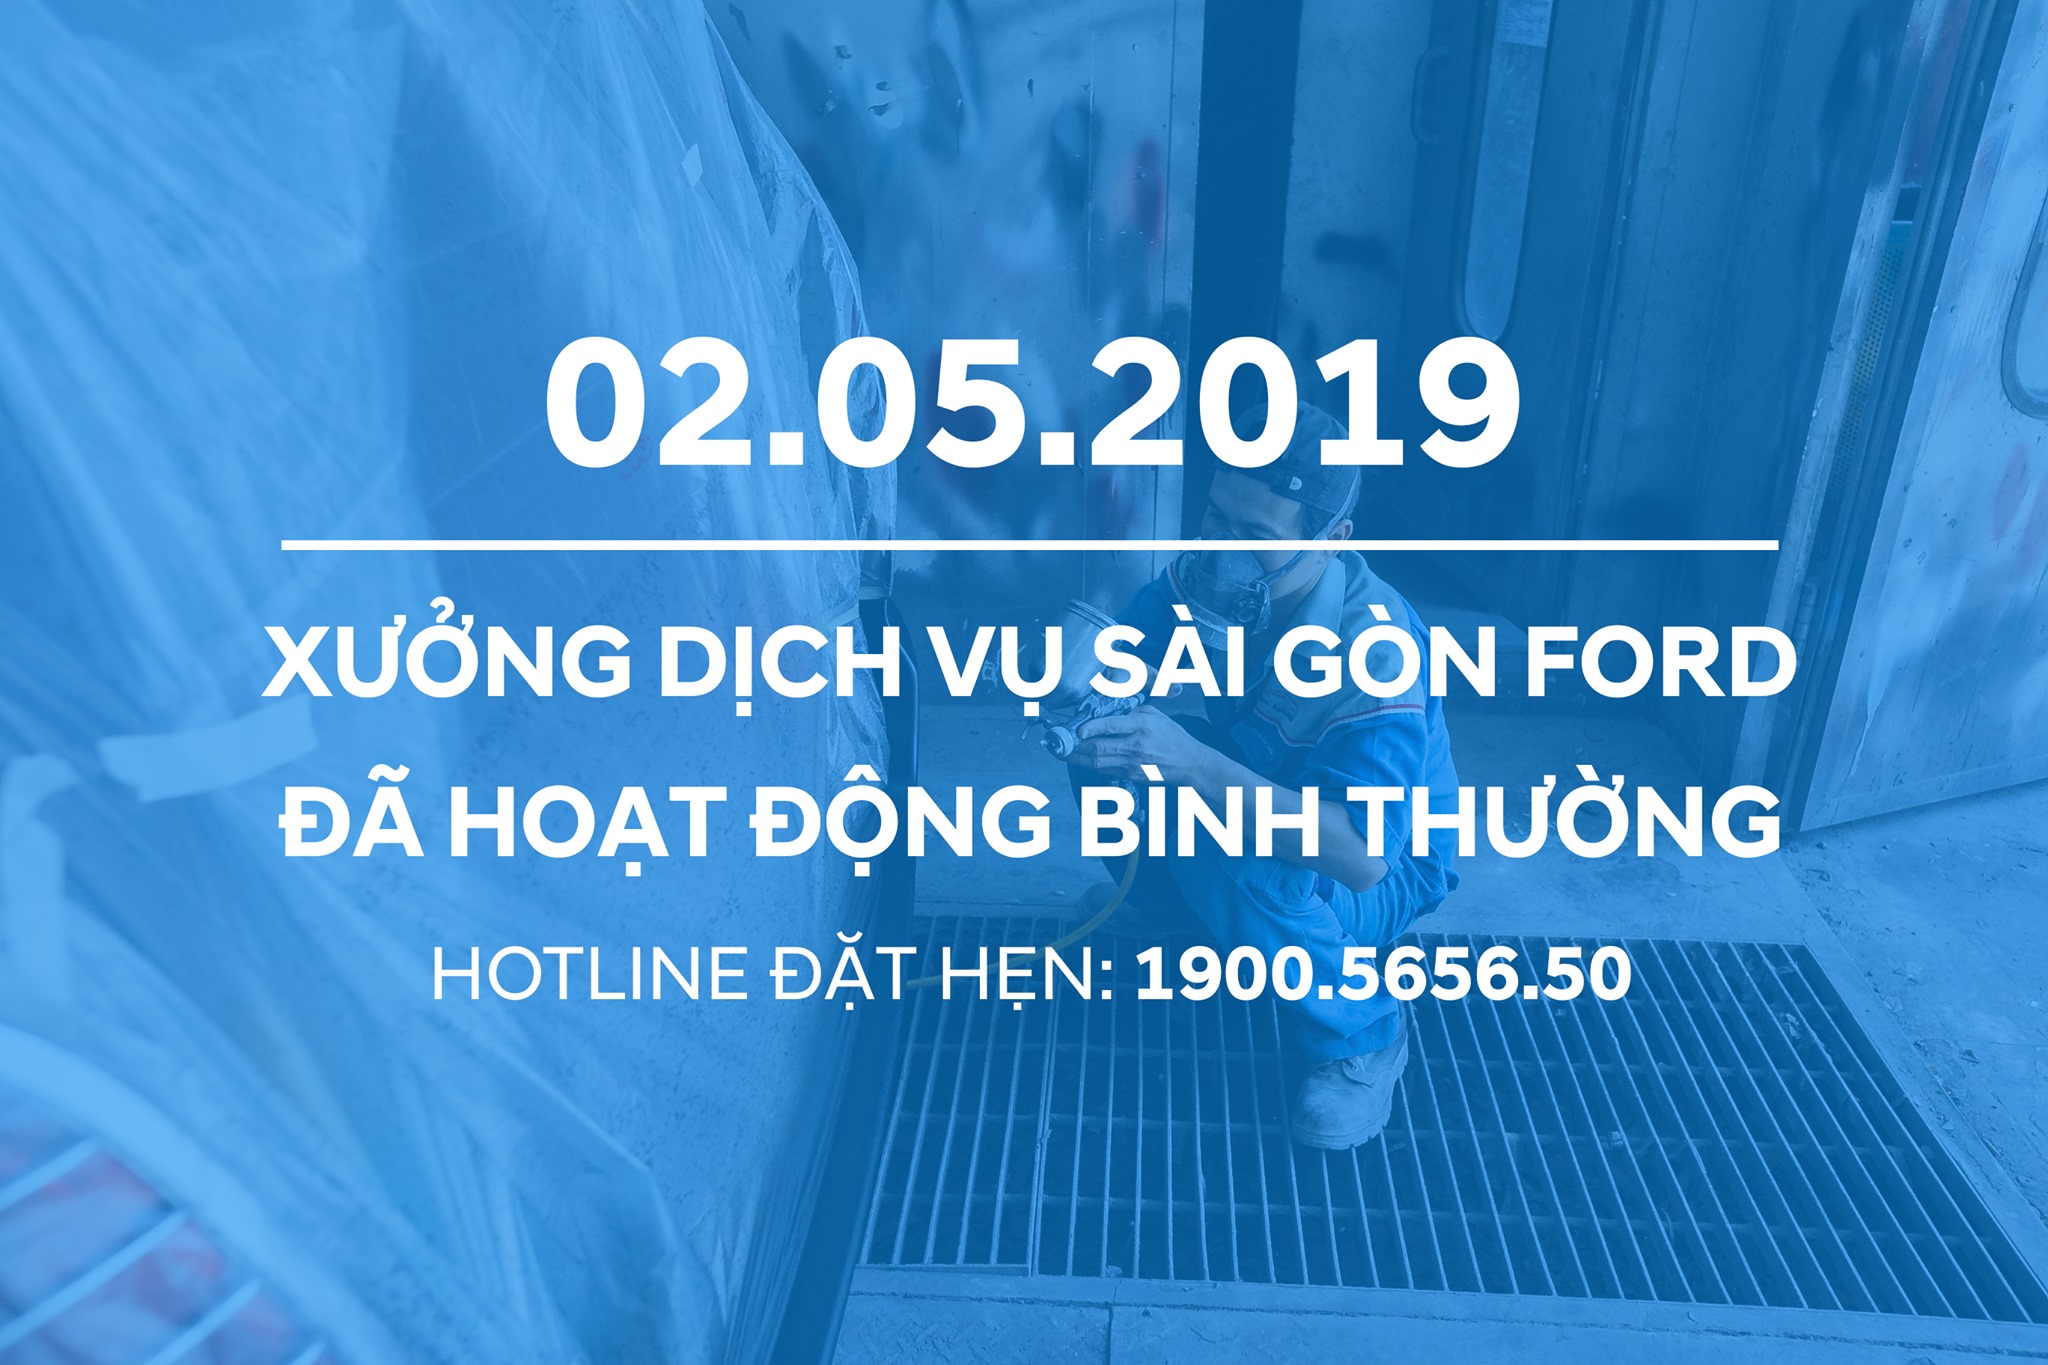 Hotline Đặt Lịch hẹn làm Dịch vụ sau Lễ tại các chi nhánh Sài Gòn Ford